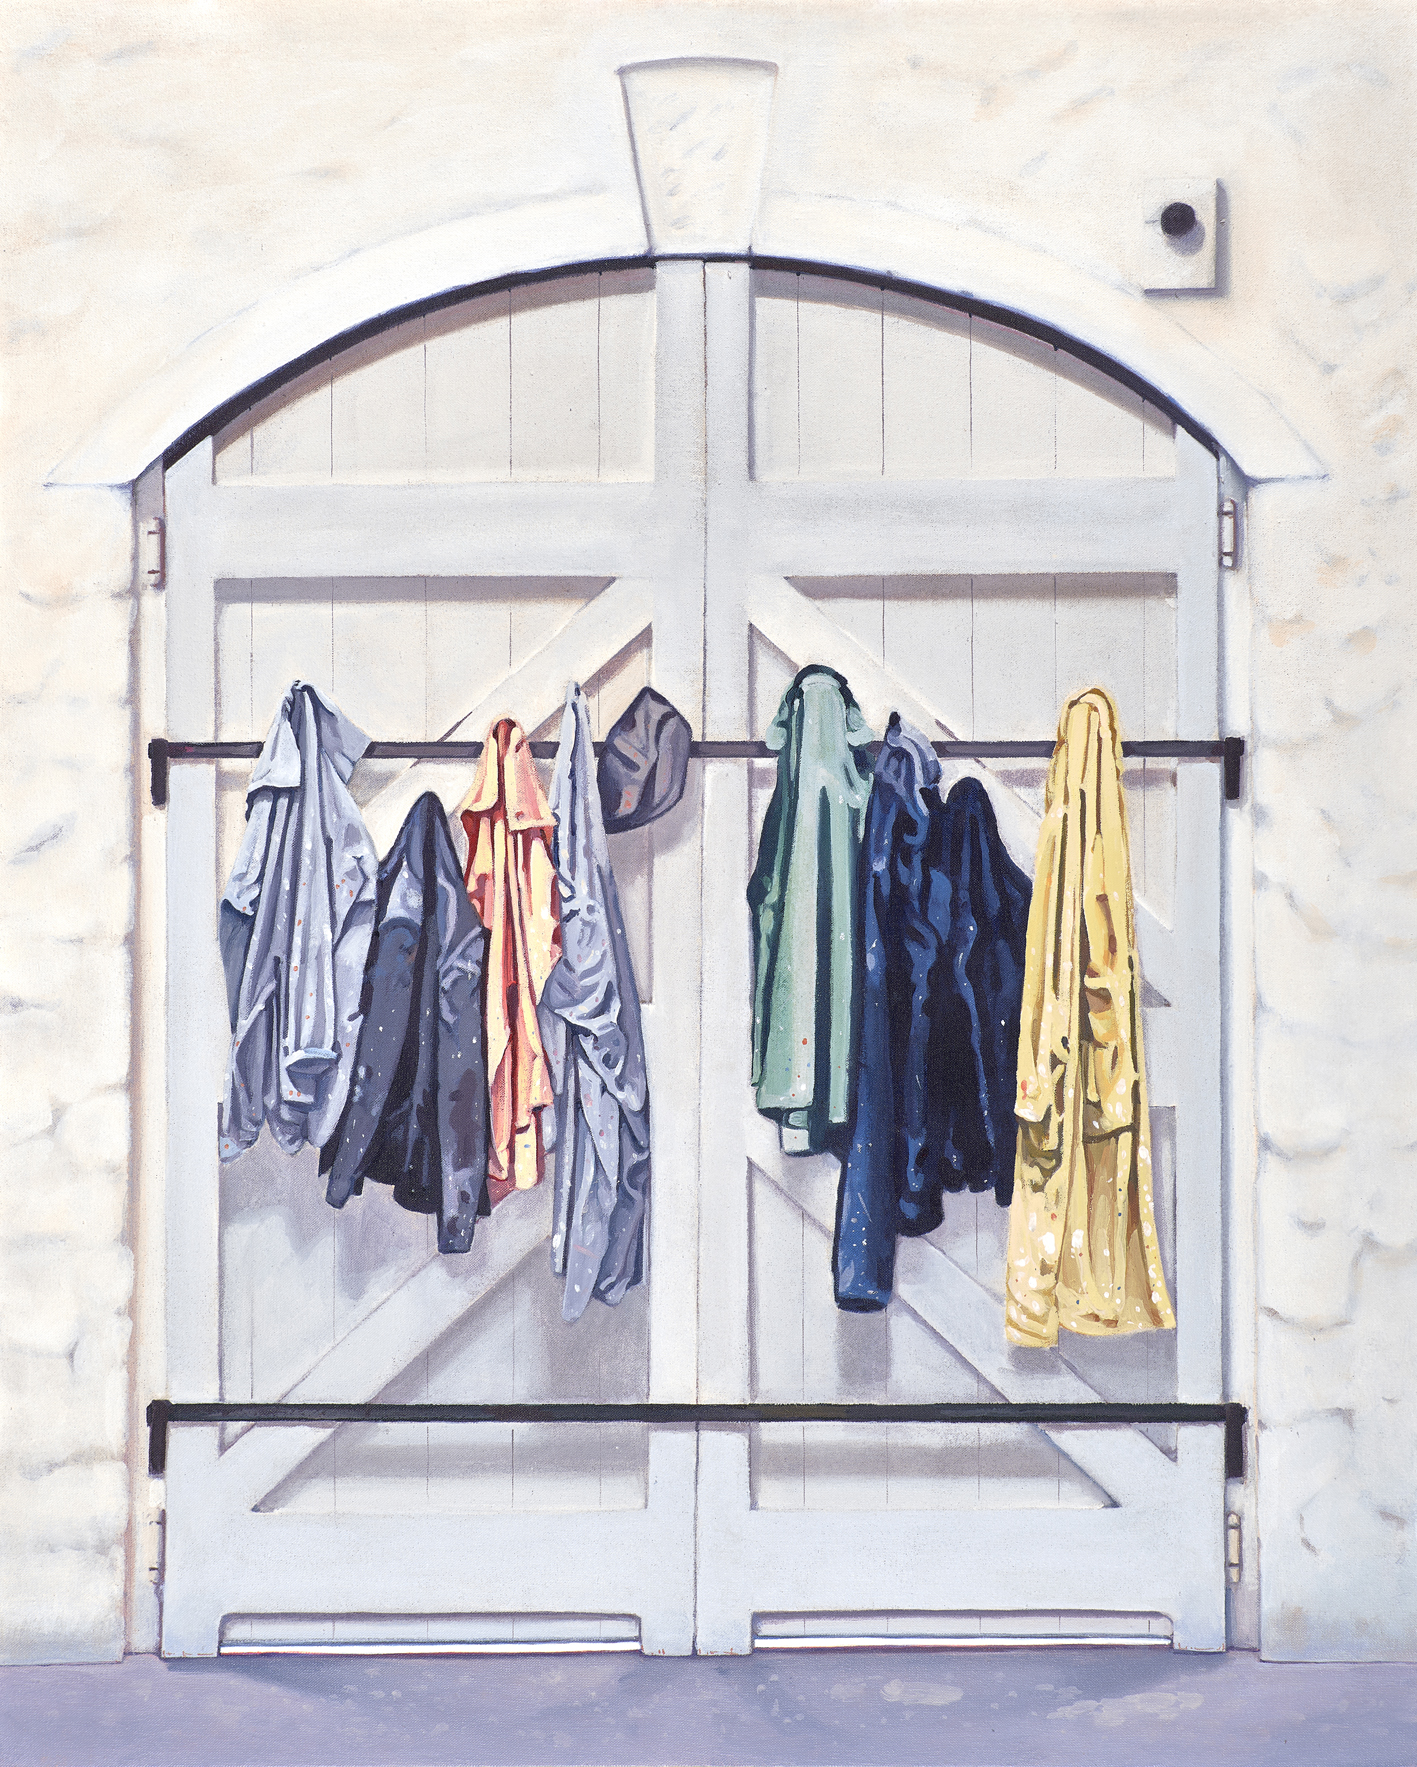 06.Barbara Hepworth, puerta del taller con ropa de trabajo, 2021. Acrílico/tela. 100 x 81 cm.